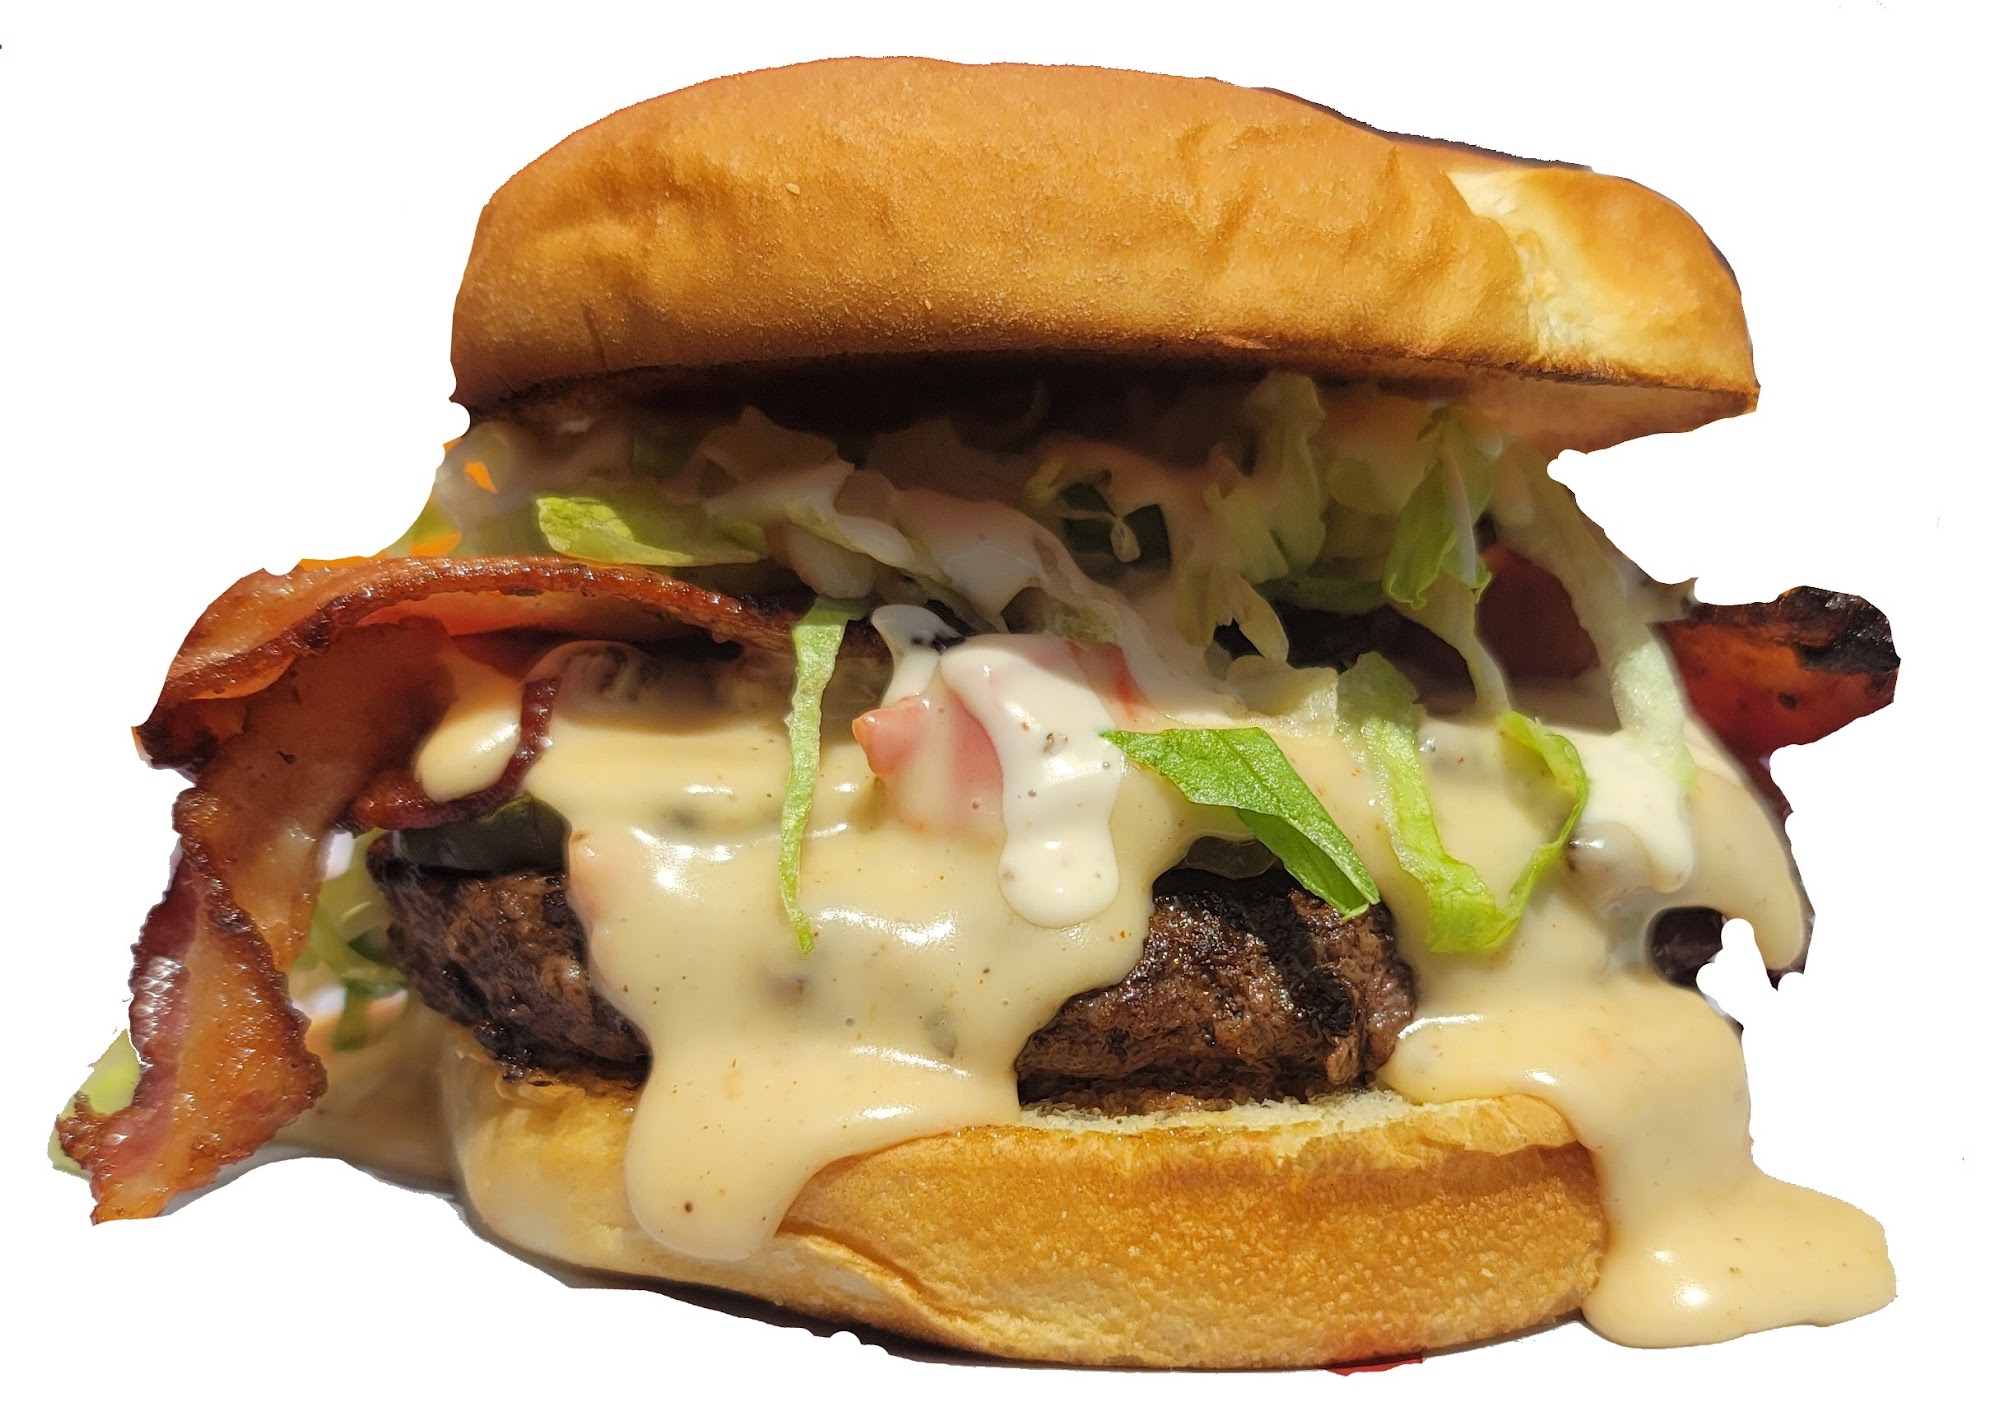 Banada Burger Food Truck & Catering LLC